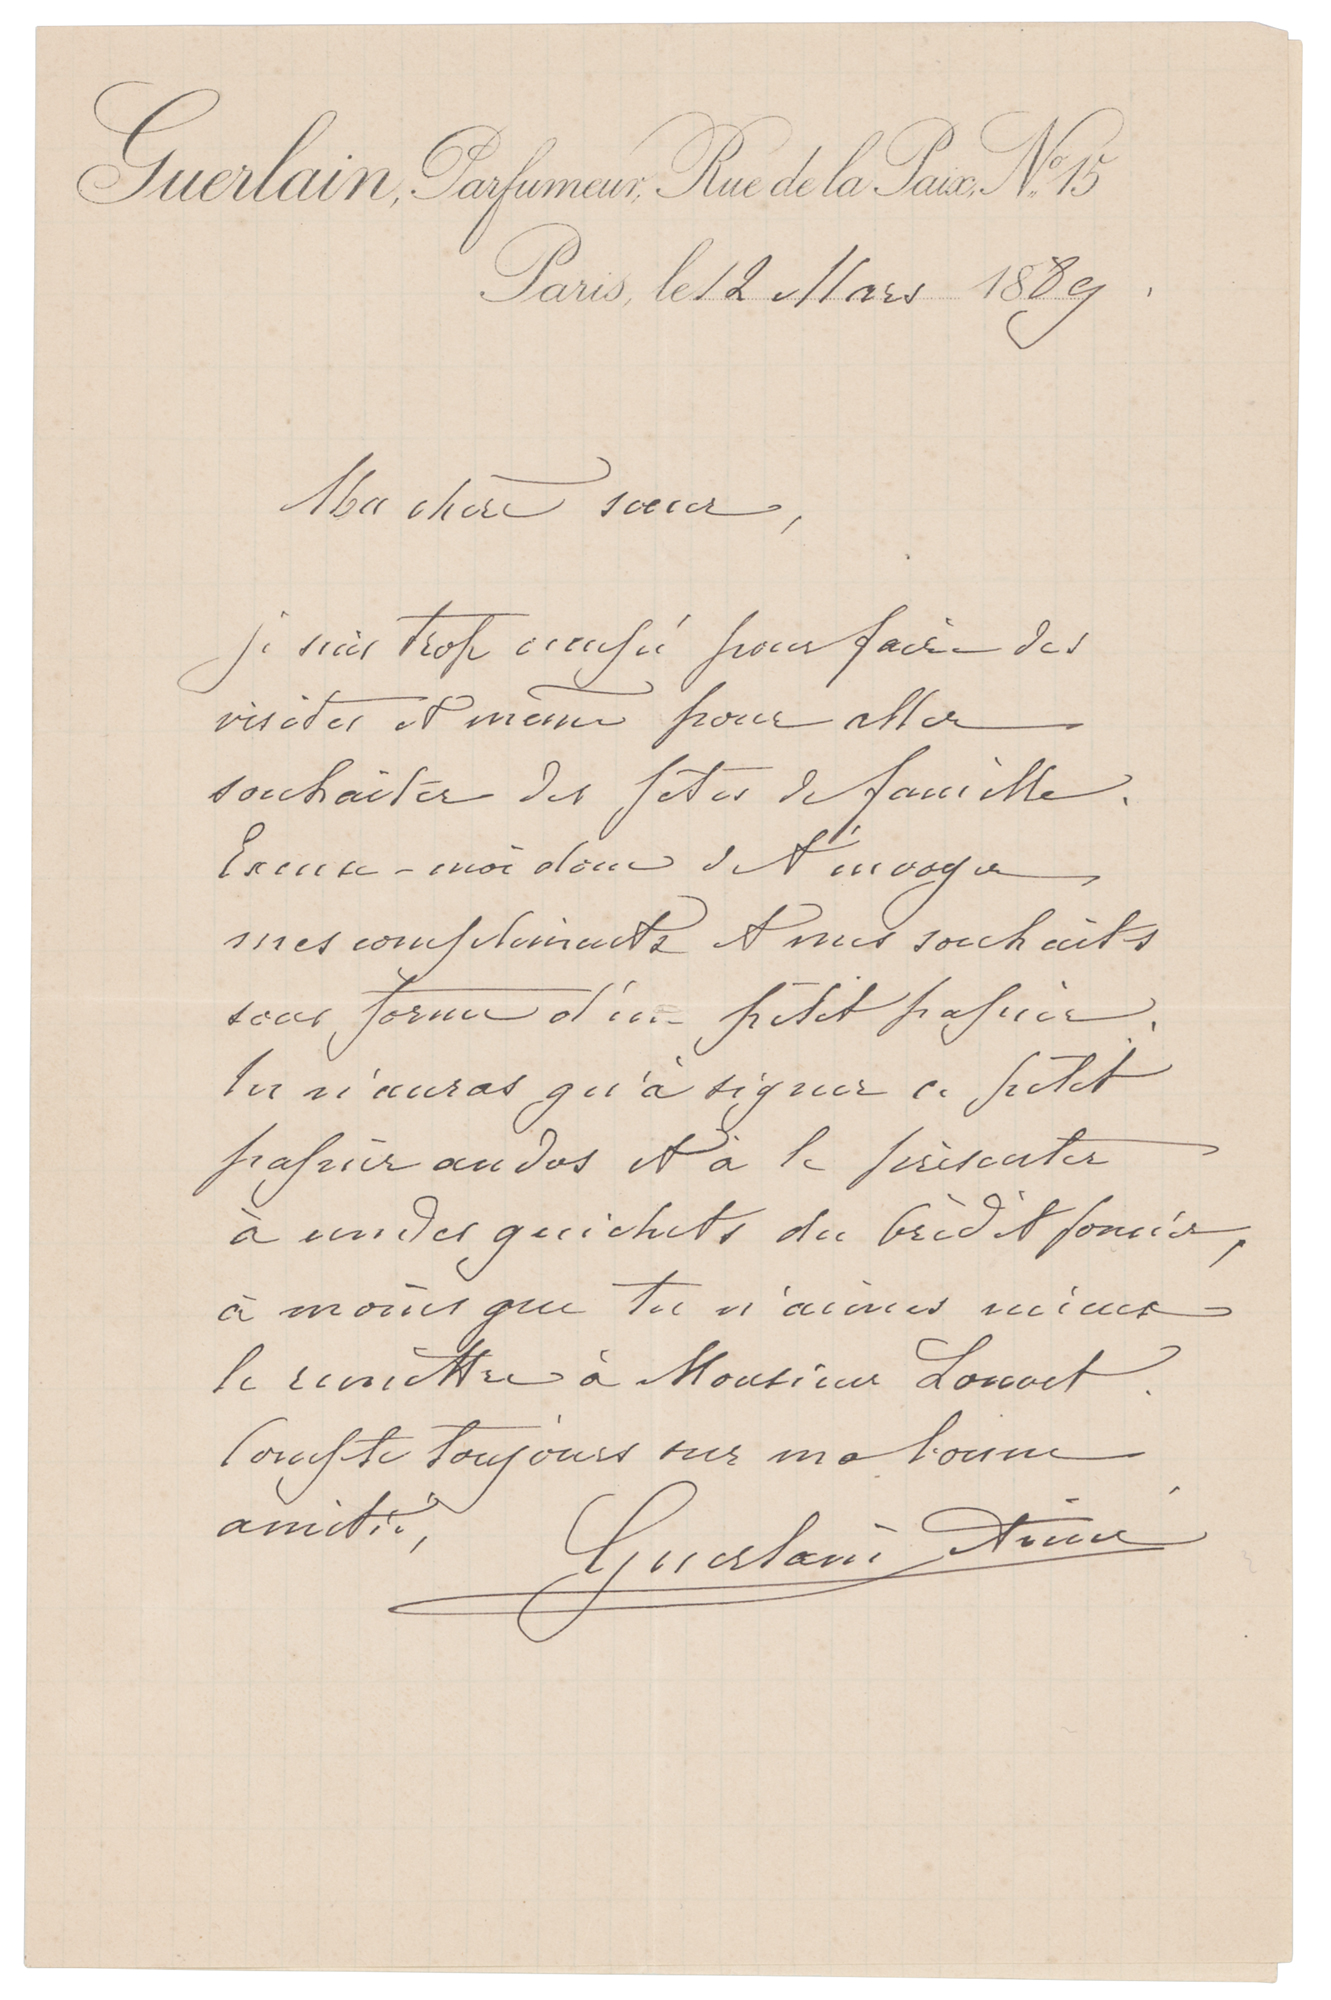 Lot #276 Aime Guerlain Autograph Letter Signed